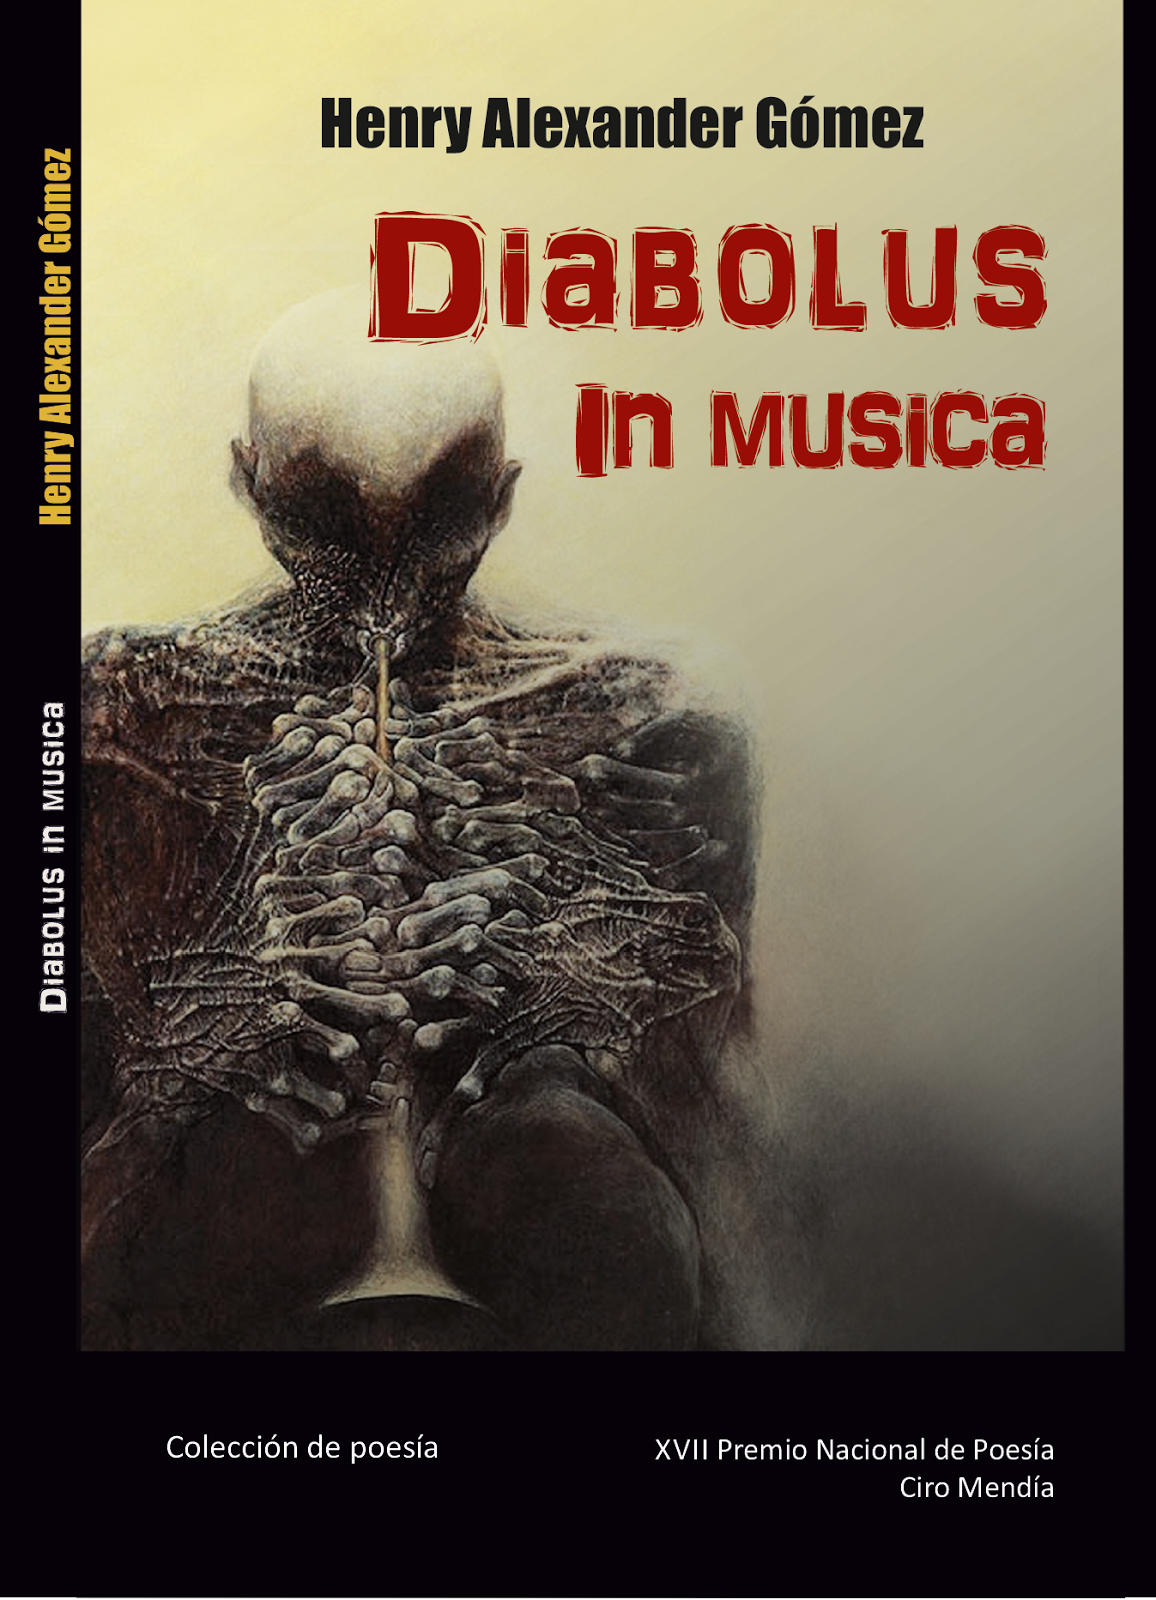 Poemas del libro "Diabolus in musica"